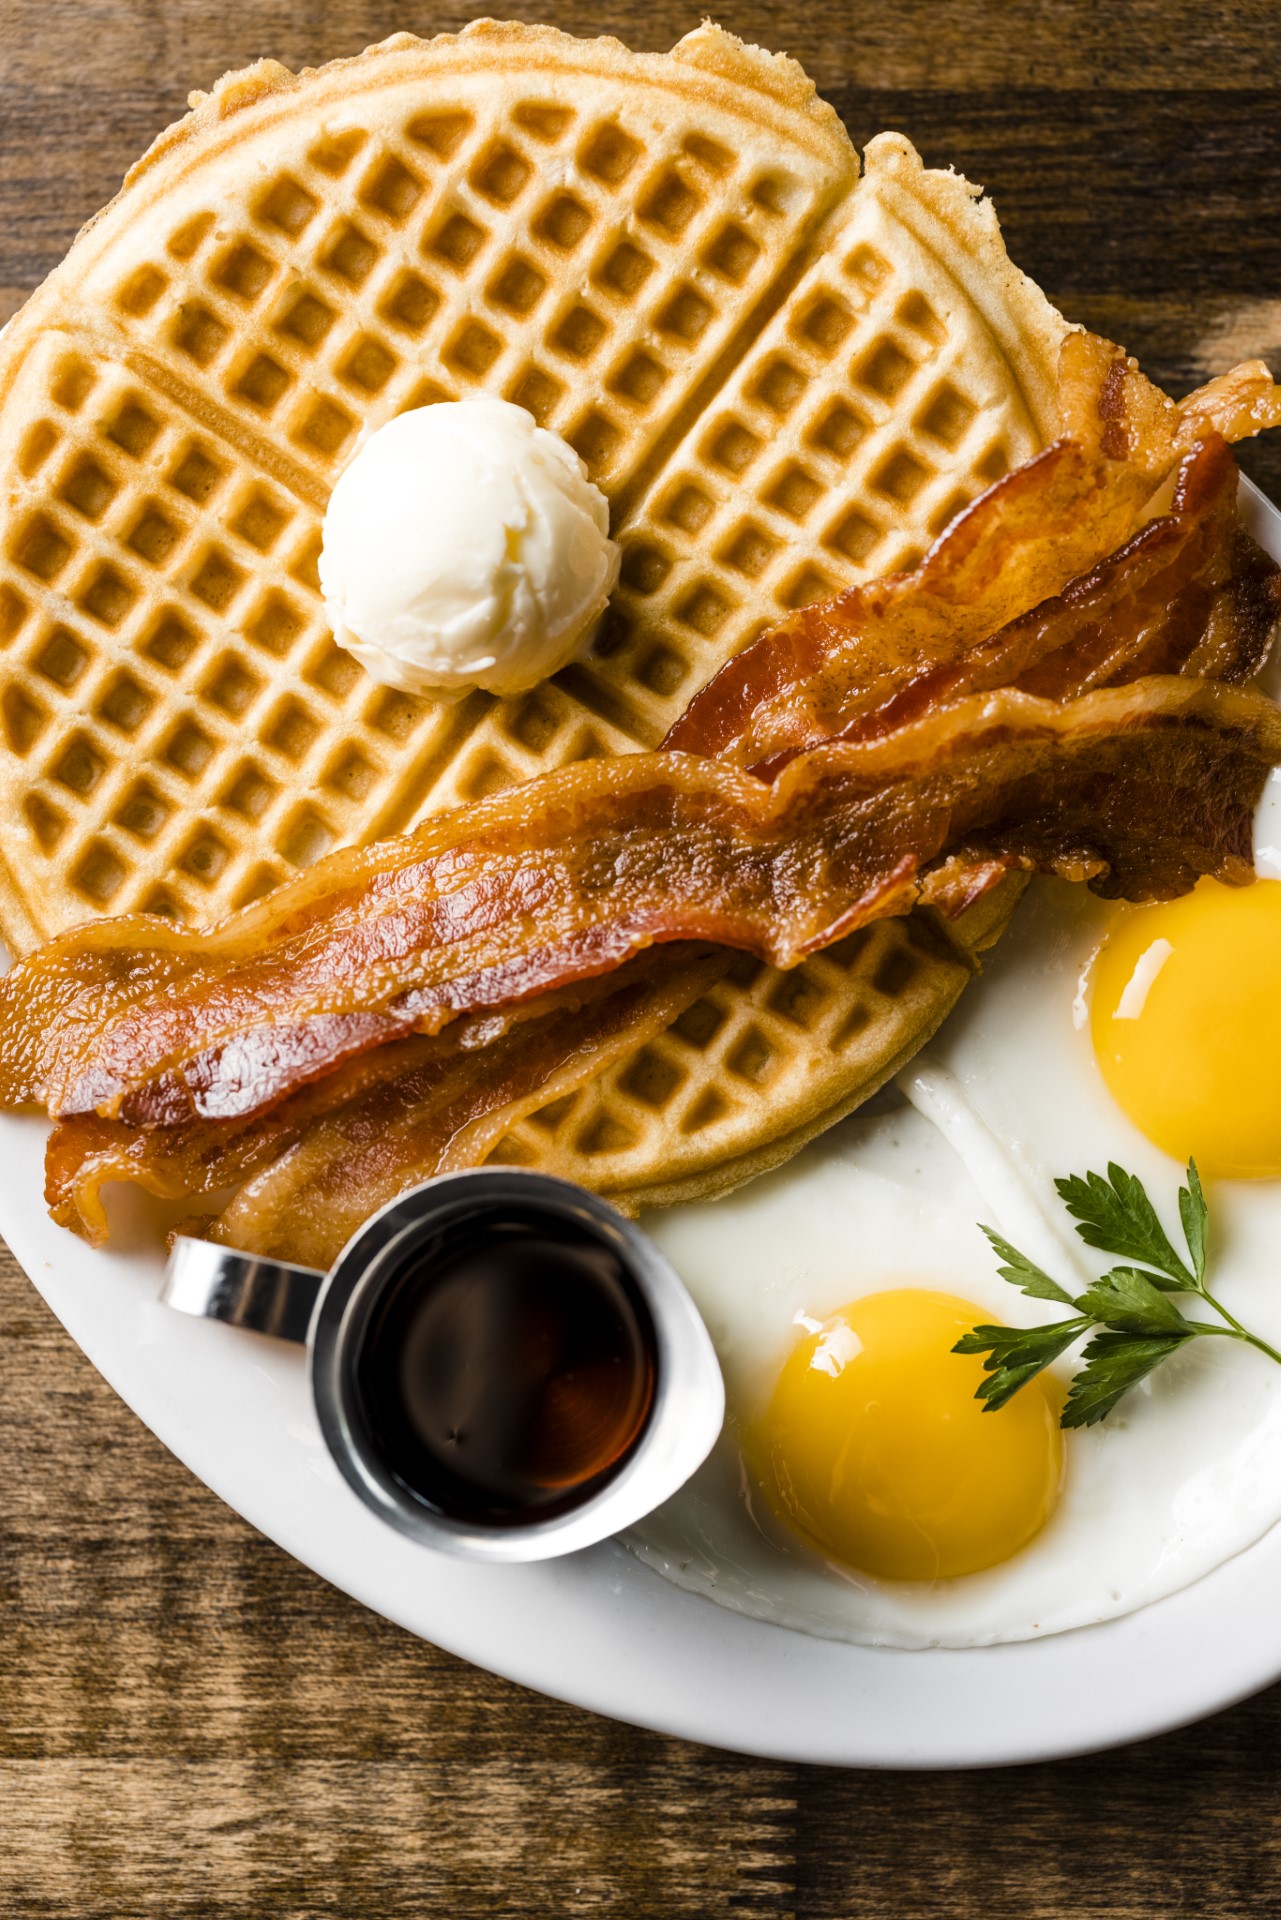 Fox & Goose Public House | The Full Monty Waffle from breakfast menu